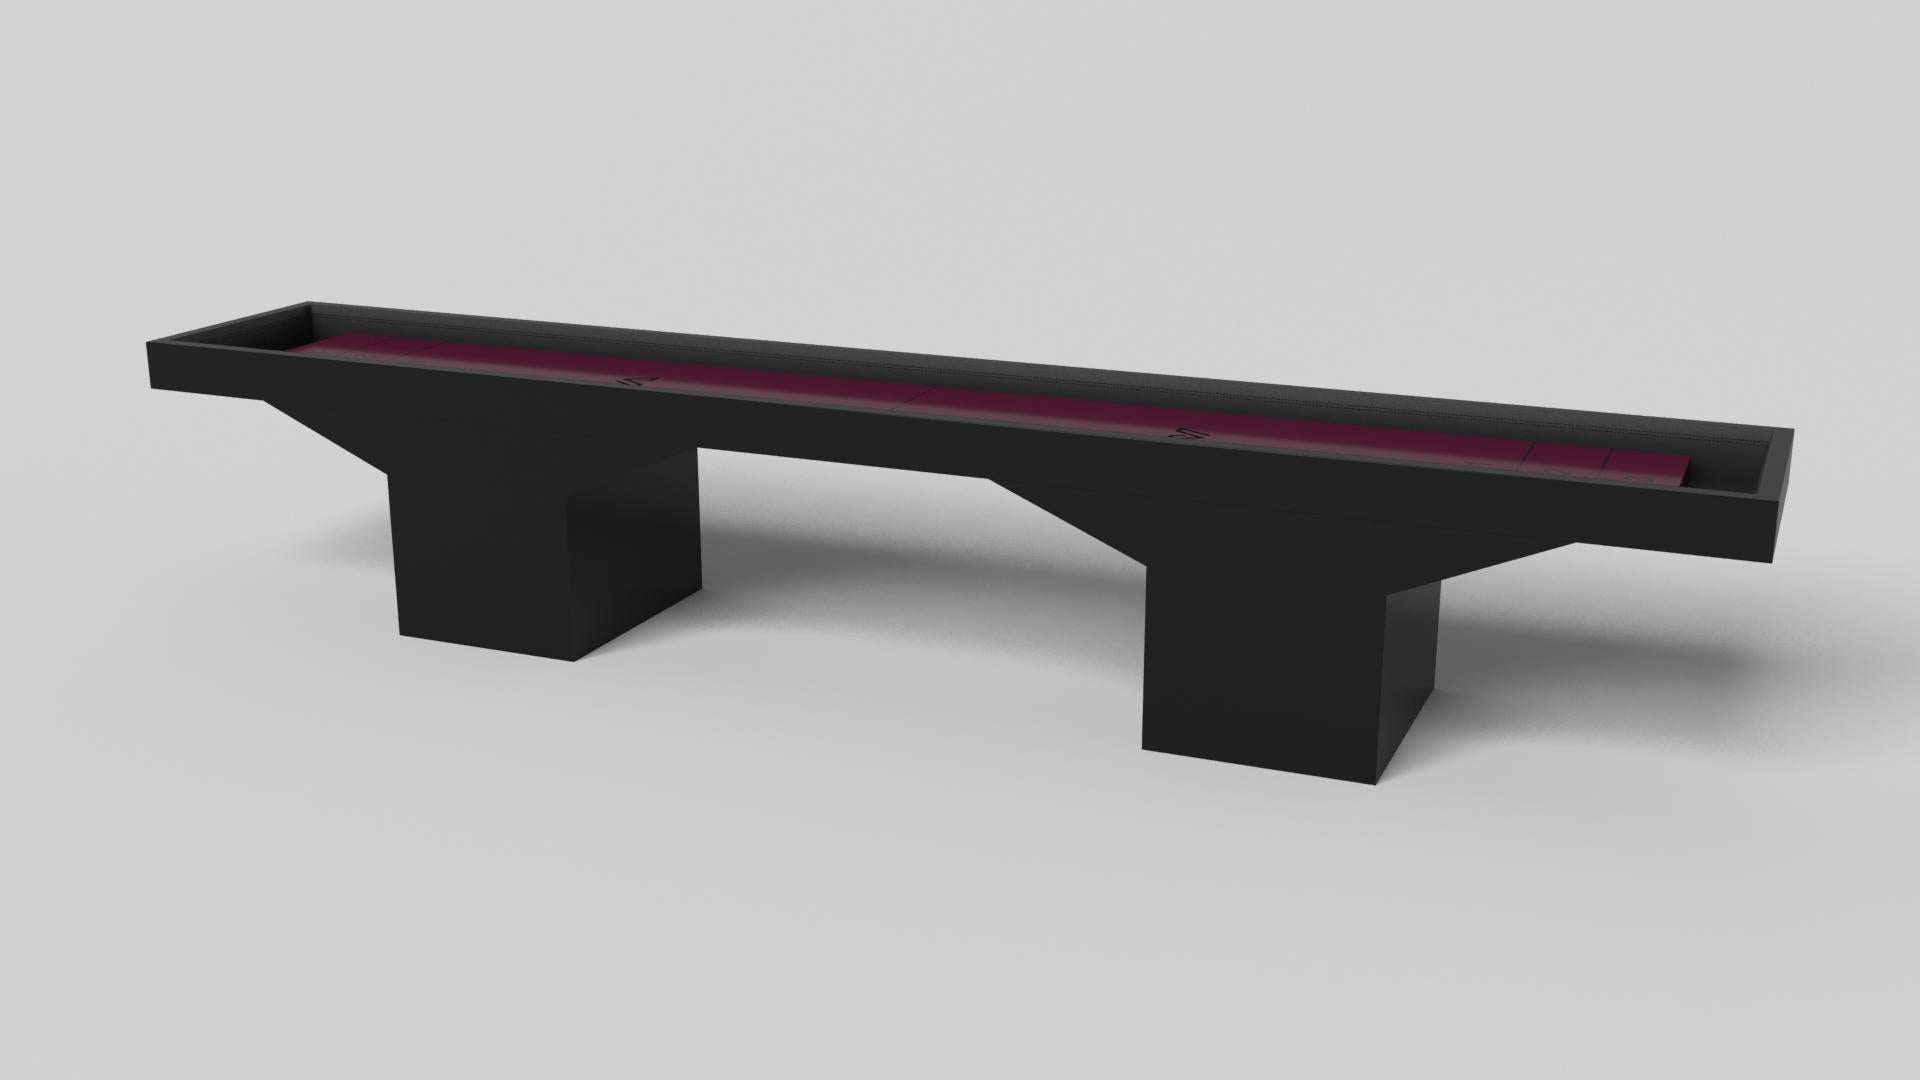 Minimalistisches Design trifft beim Trestle Shuffleboard-Tisch auf opulente Eleganz. Dieser moderne Tisch ist mit einer professionellen Oberfläche für endloses Spiel ausgestattet und wurde fachmännisch hergestellt. Die quadratischen Blockbeine